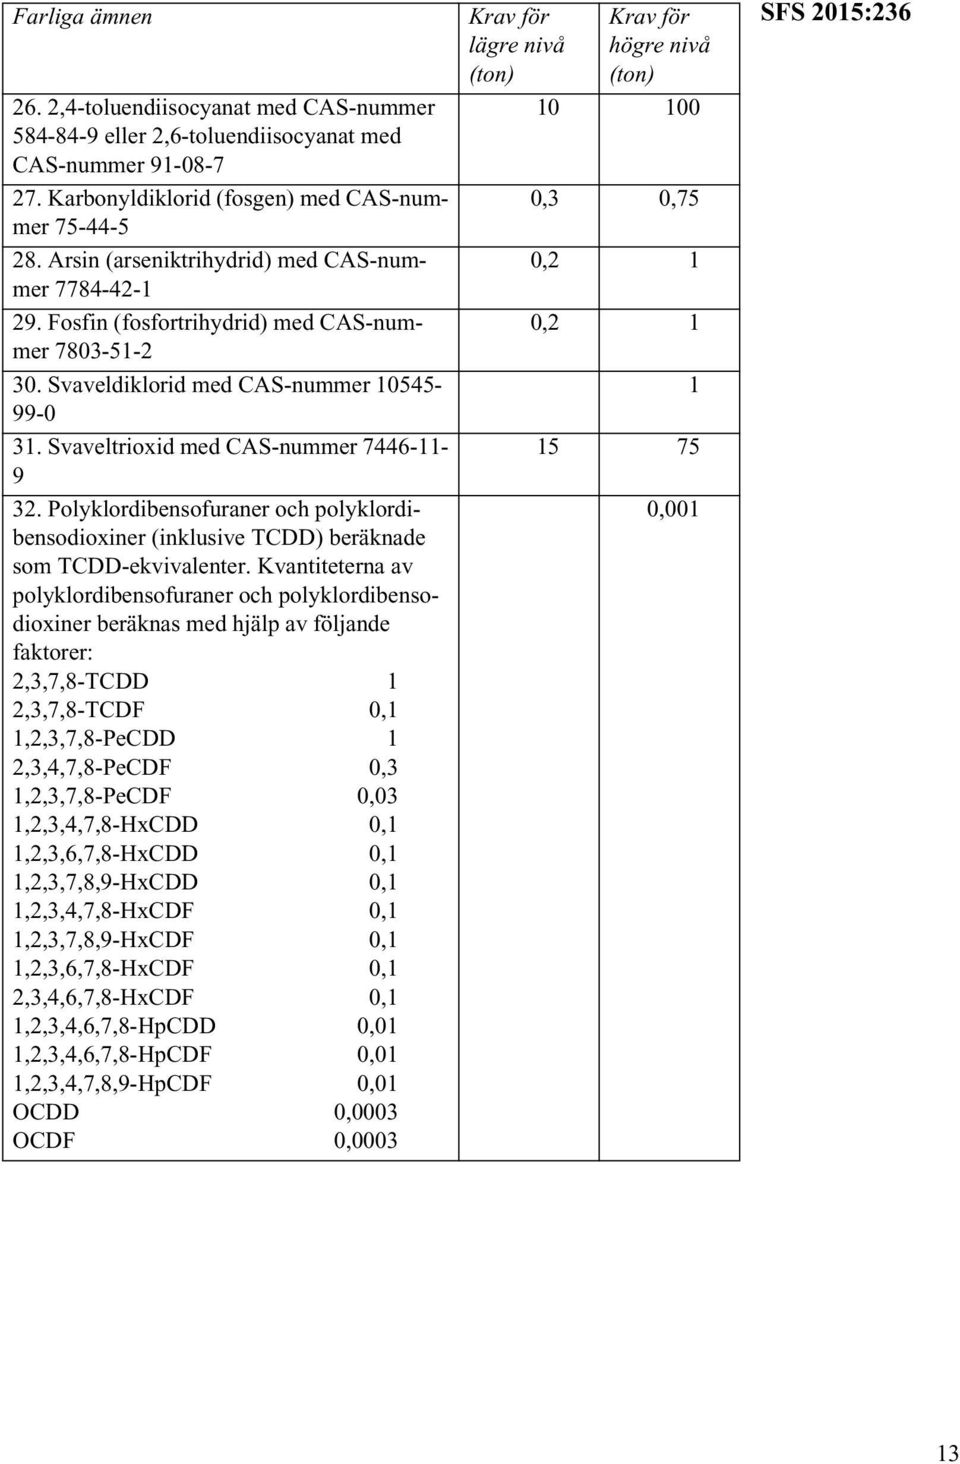 Polyklordibensofuraner och polyklordibensodioxiner (inklusive TCDD) beräknade som TCDD-ekvivalenter.